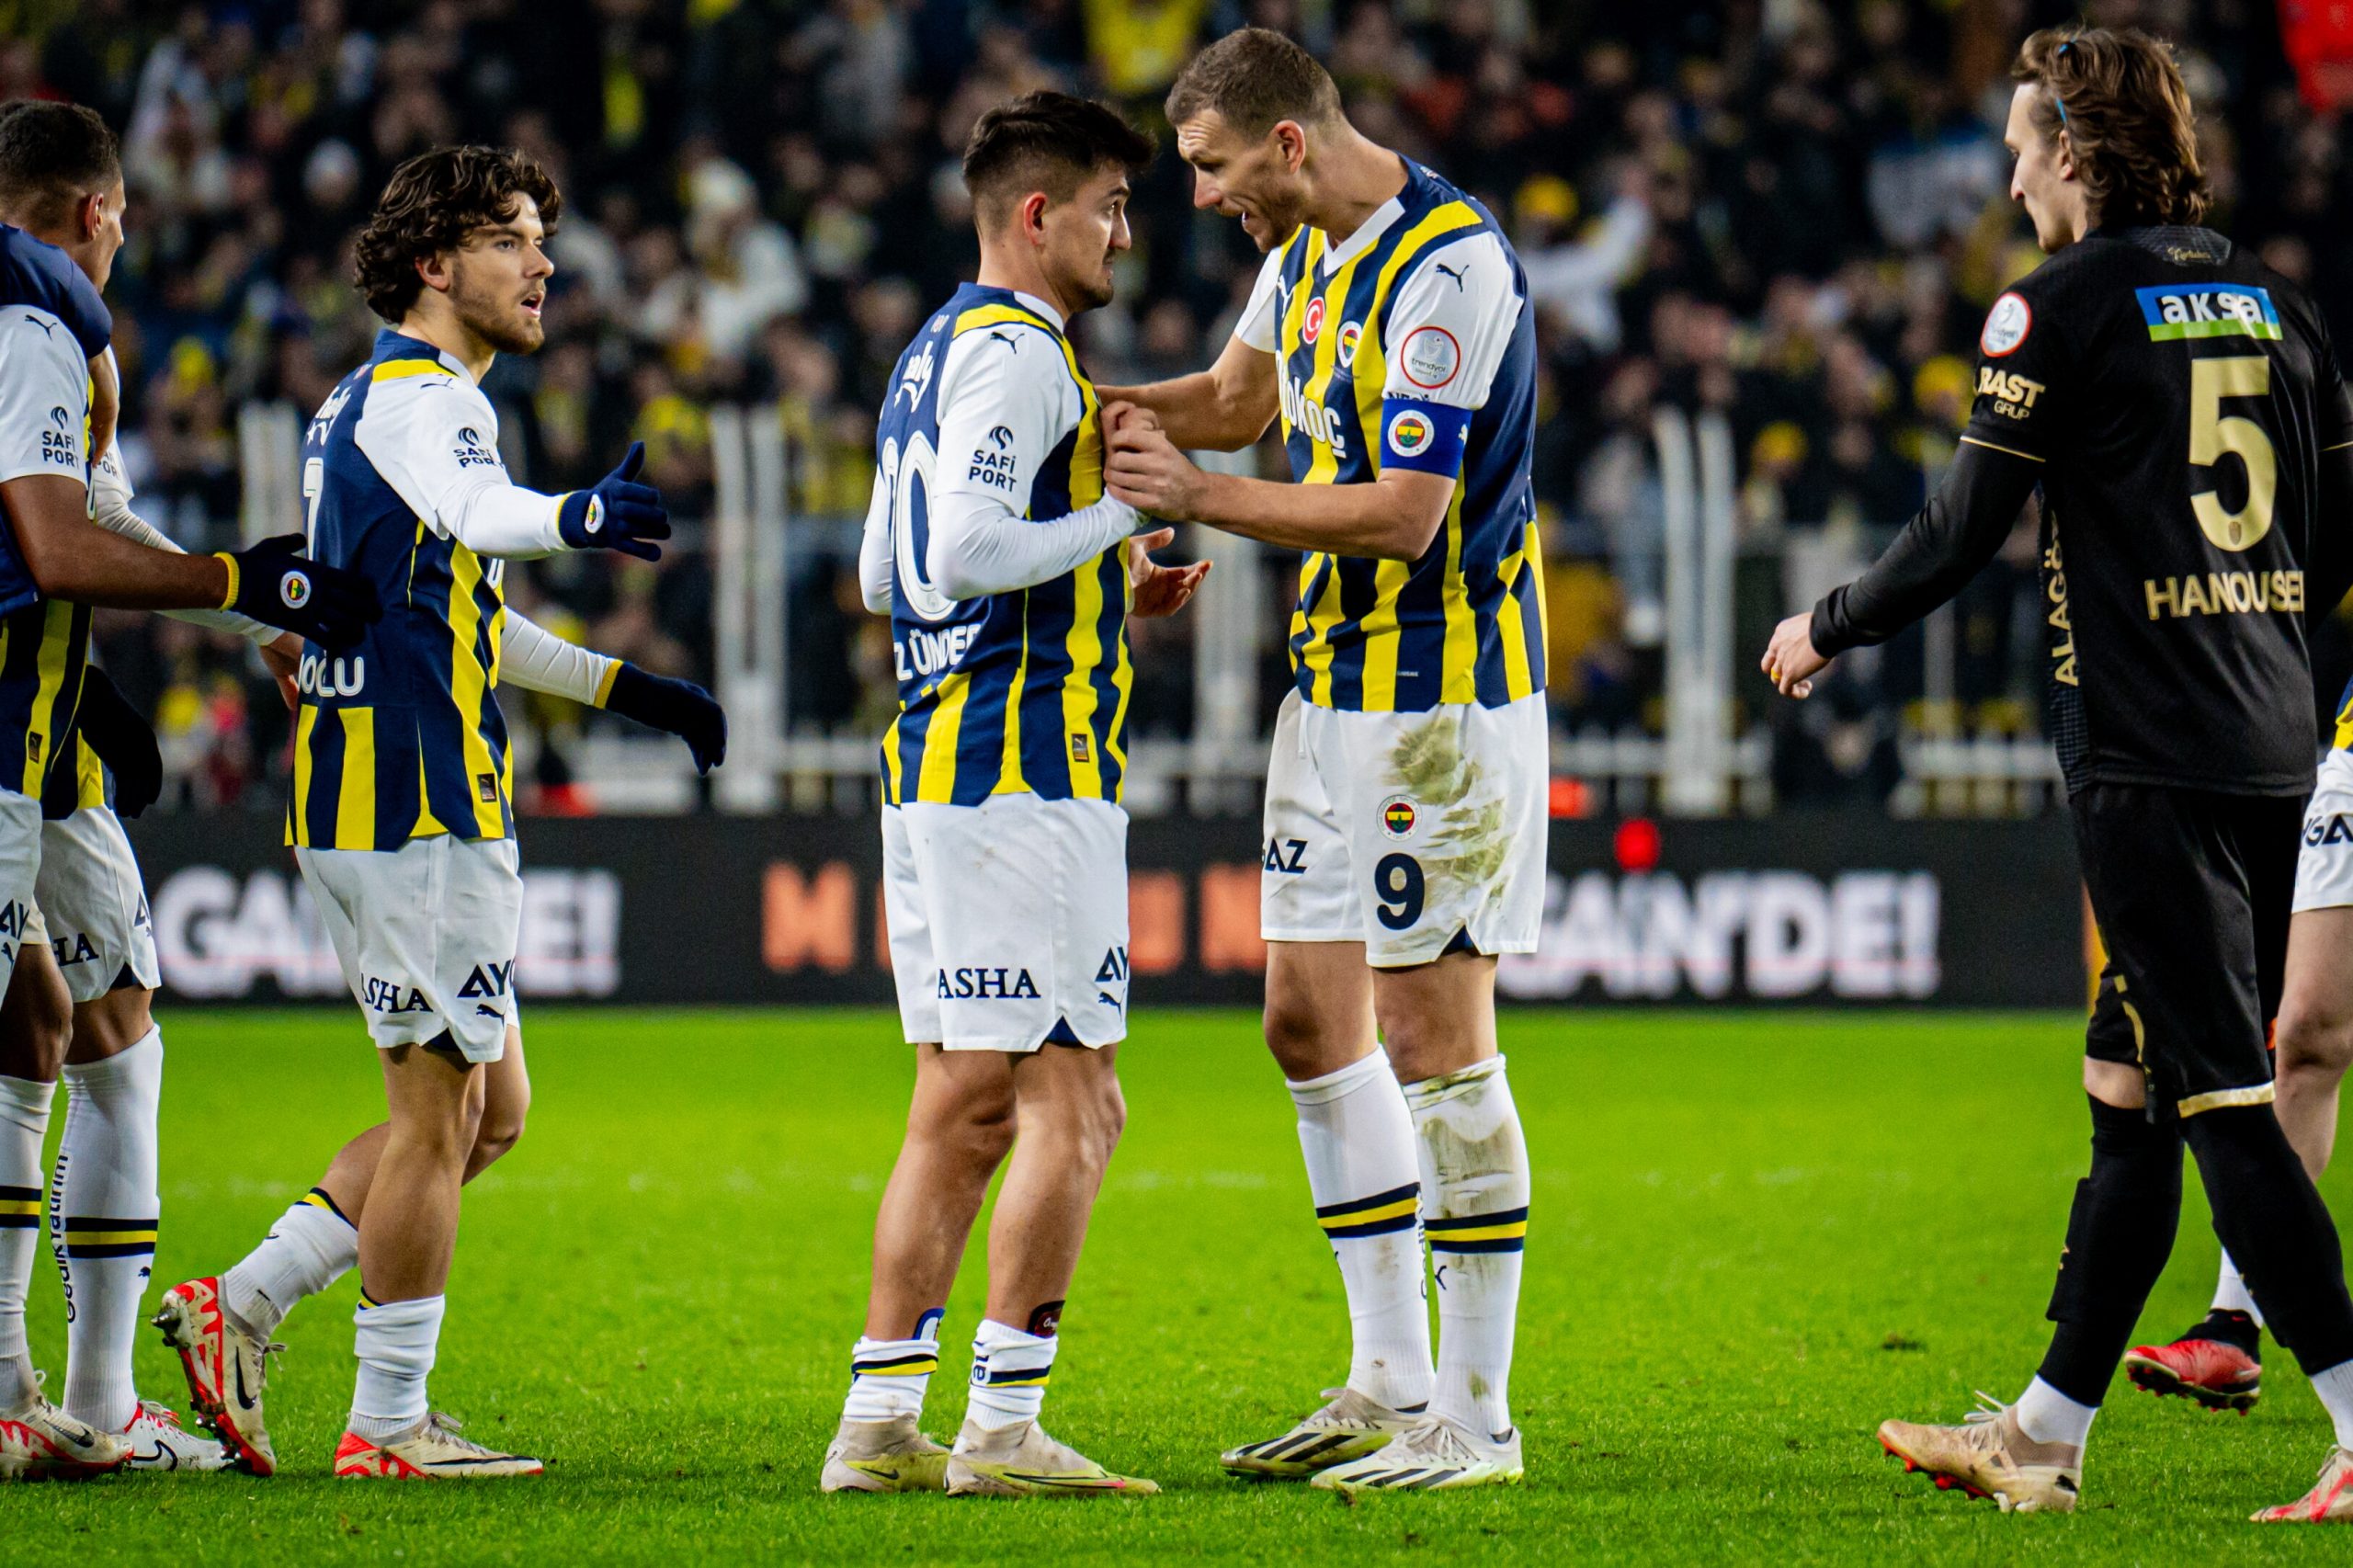 Konyaspor-Fenerbahce, il pronostico di Super Lig: gara da OVER